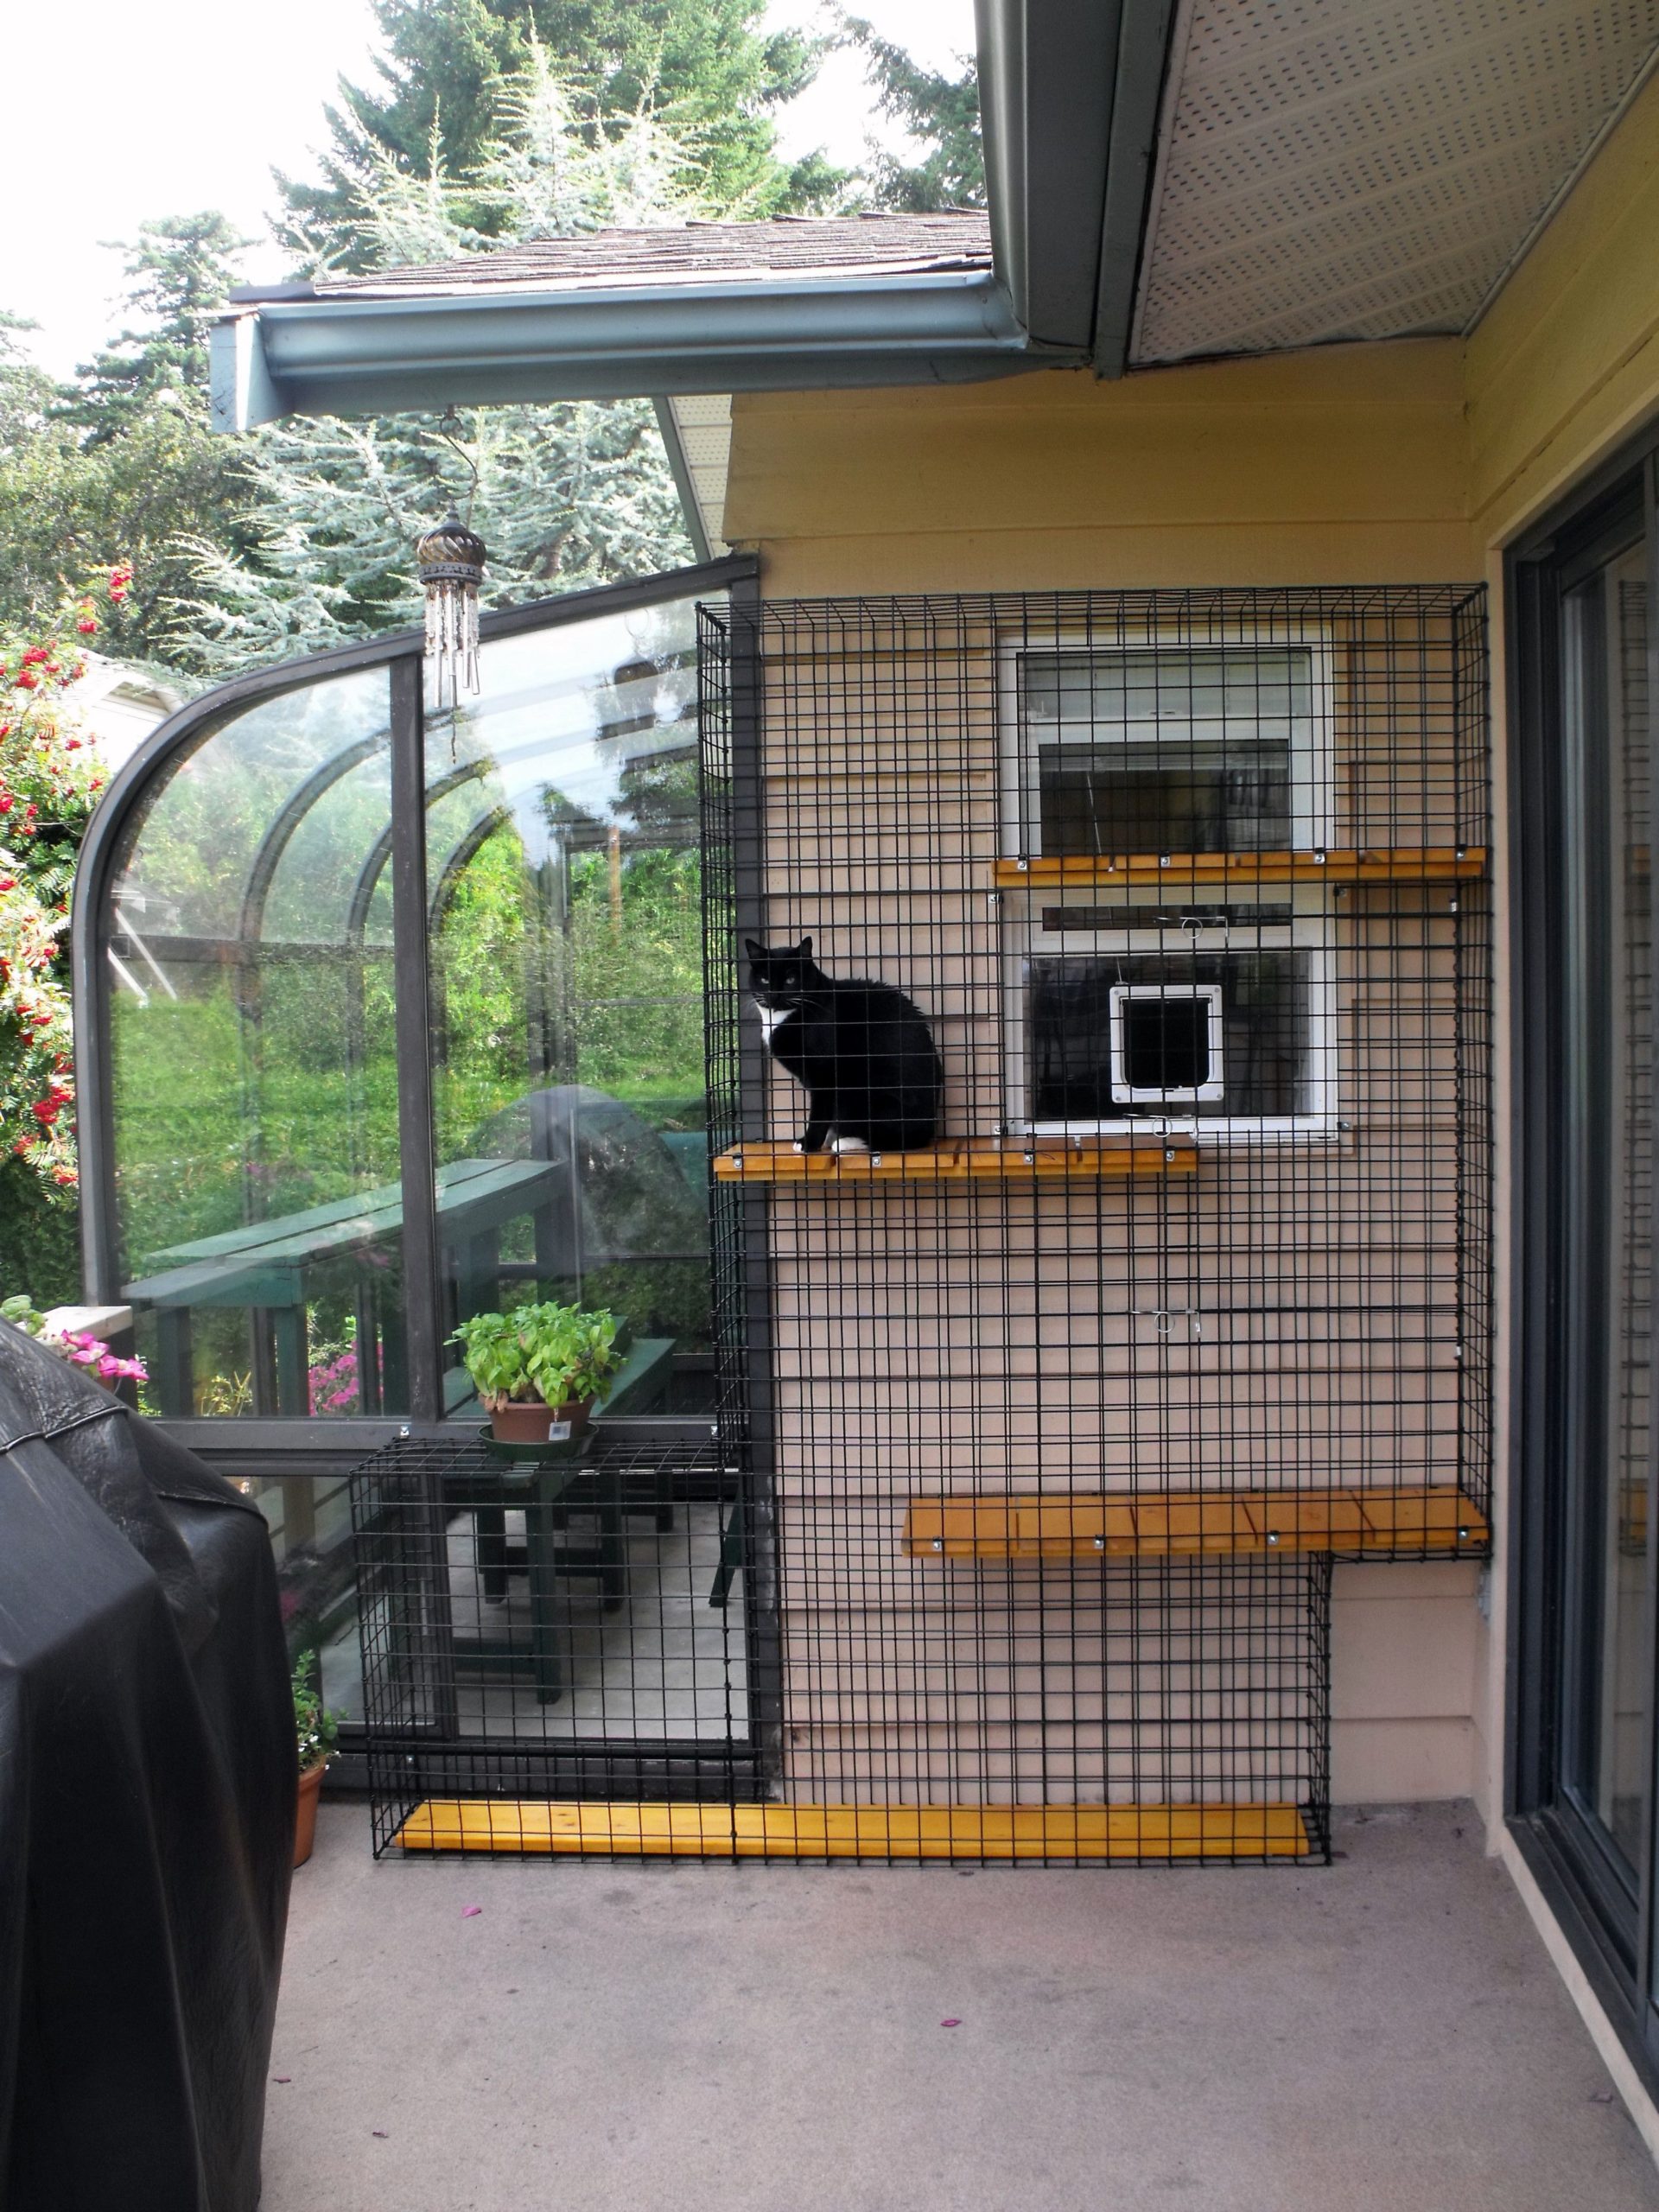 Catio Spaces, Cat Enclosures, Cat Runs, Catios